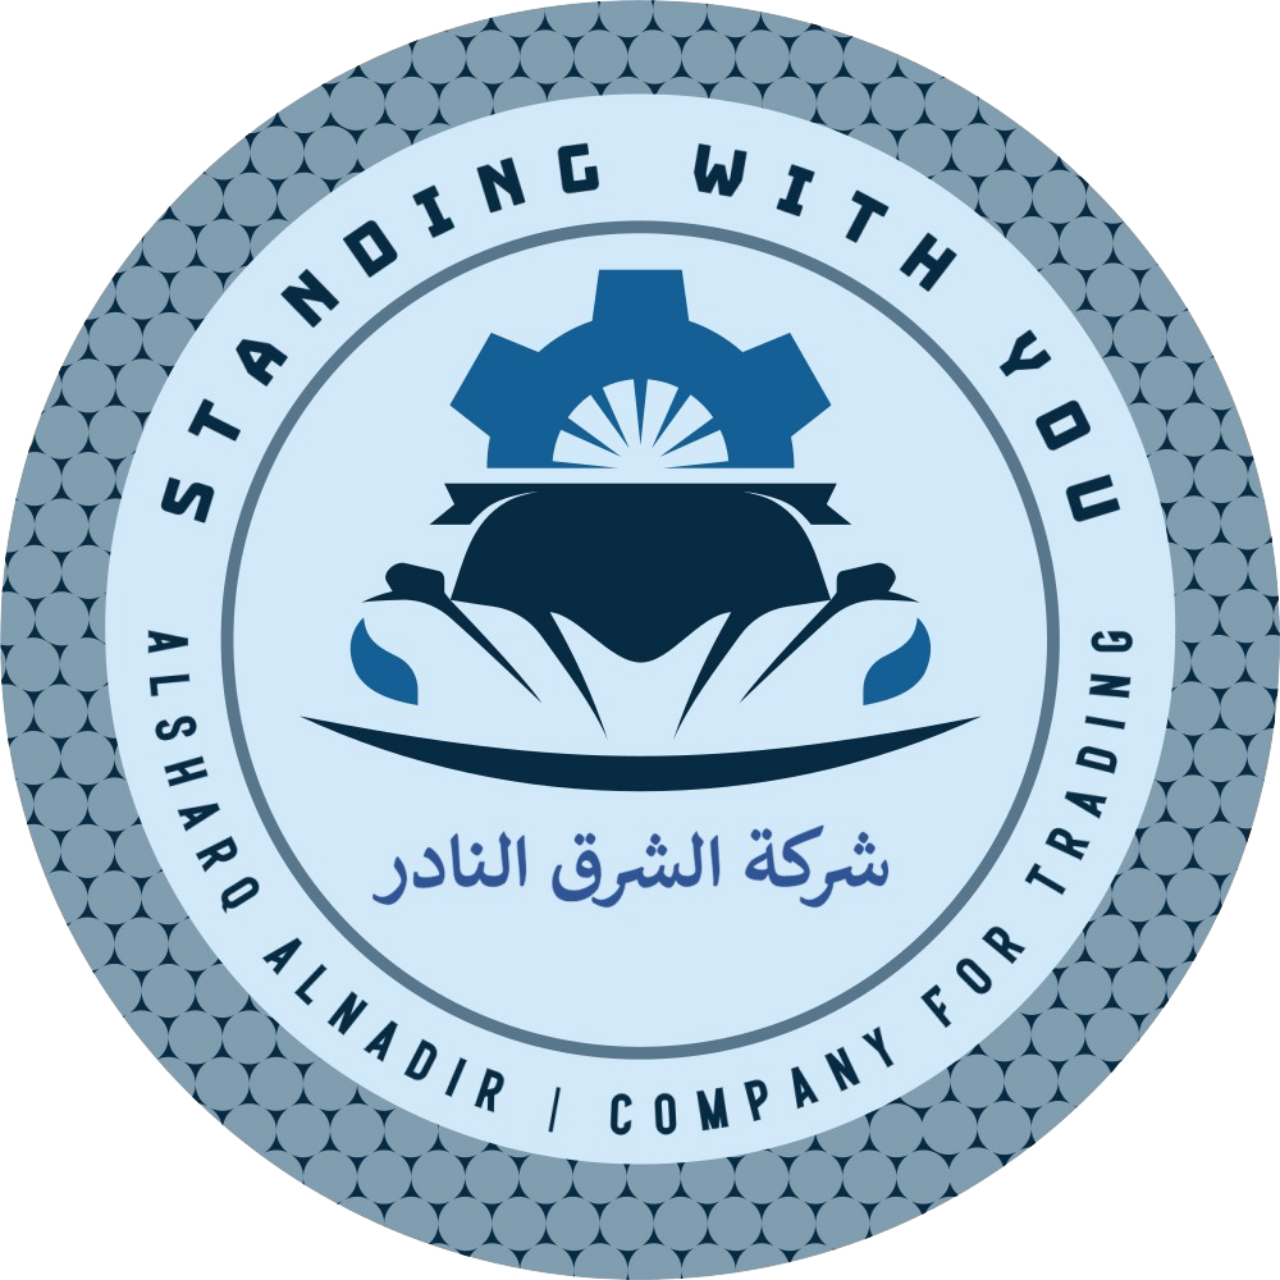 Alsharq Alnadir Company for Trading's logo